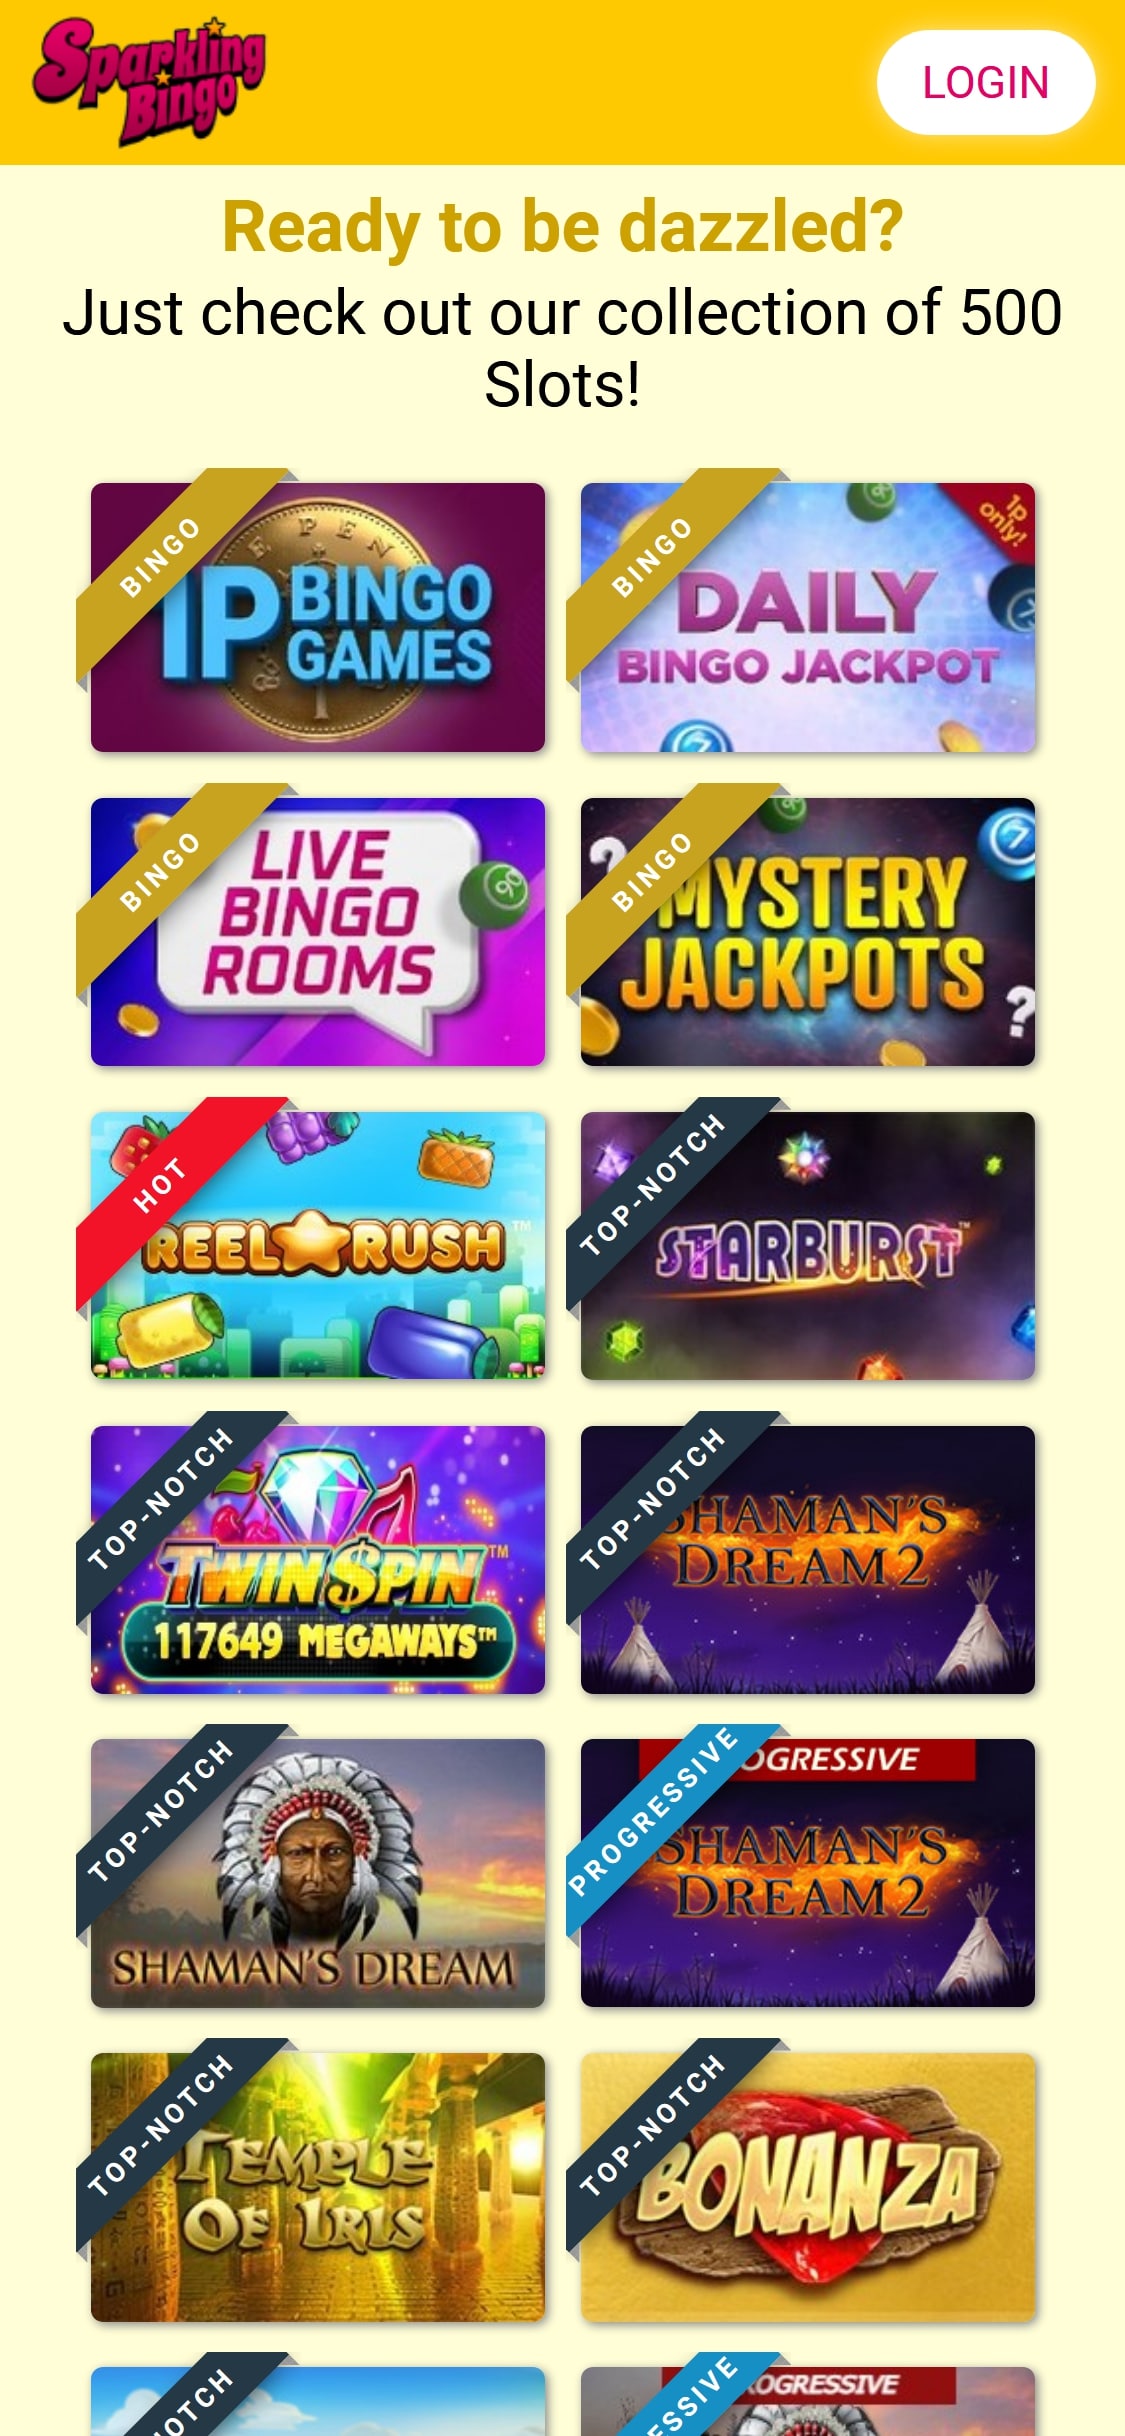 Sparkling Bingo Casino Mobile Games Review